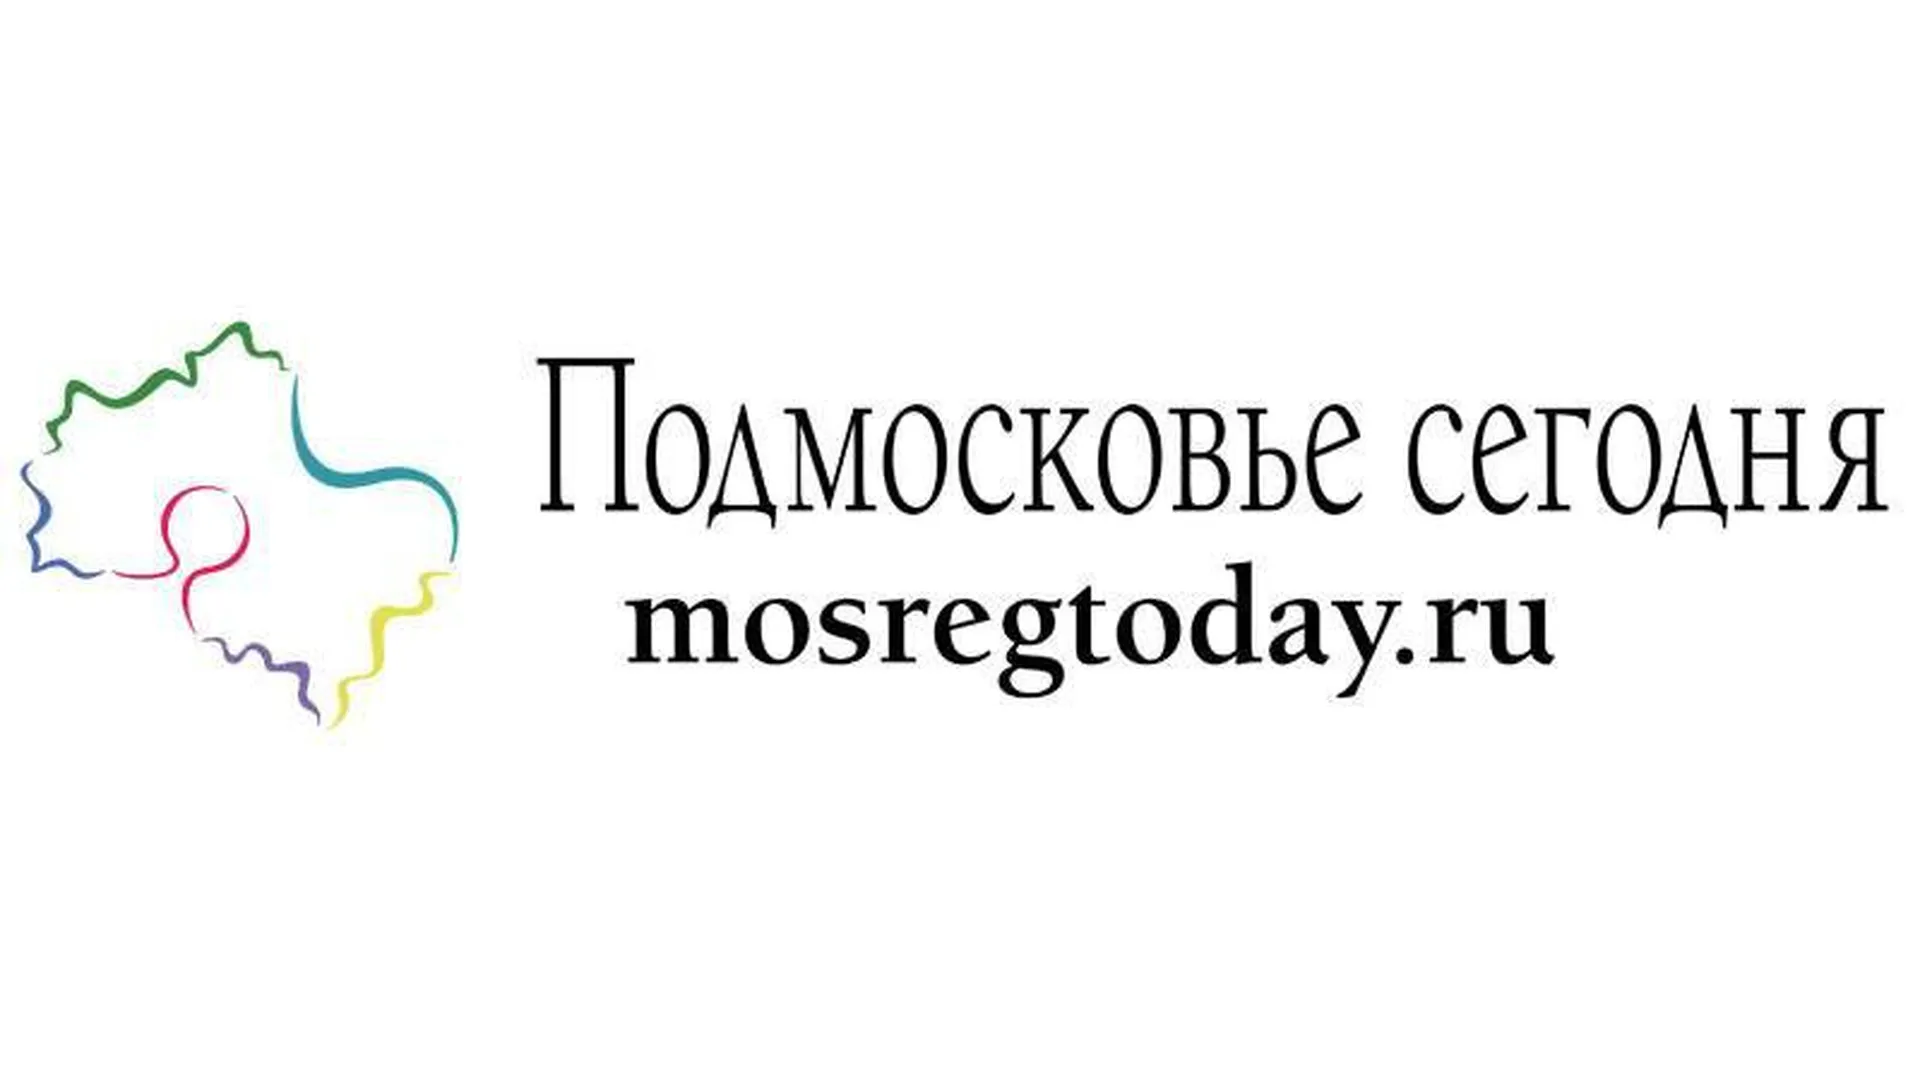 Сайт «Подмосковье сегодня» вошел в тройку самых цитируемых СМИ Московского региона в 2016 году